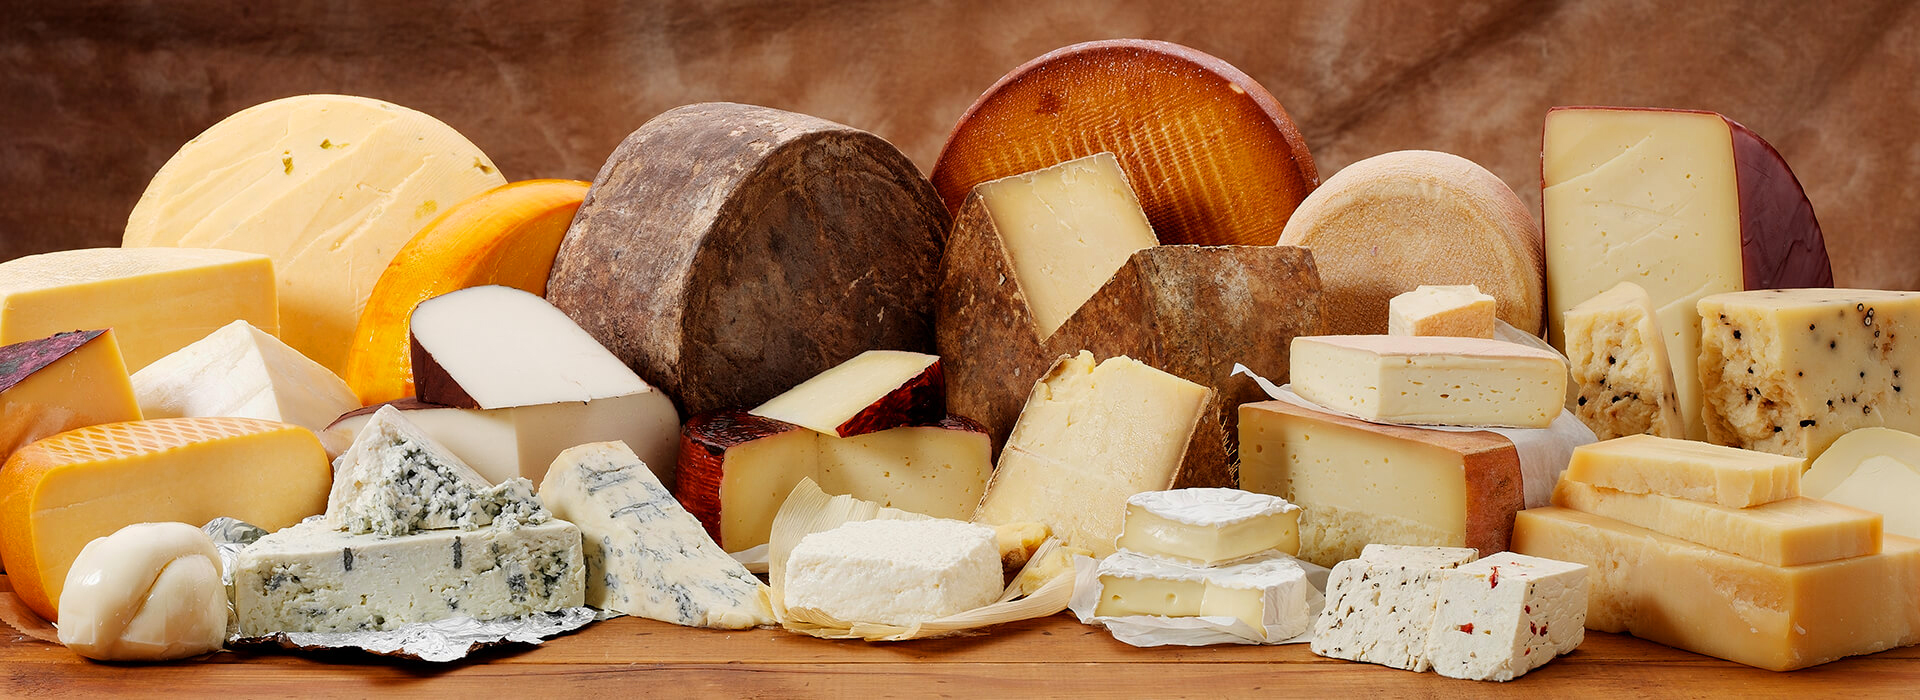 Labāko Krievijas sieru reitings 2020. gadam